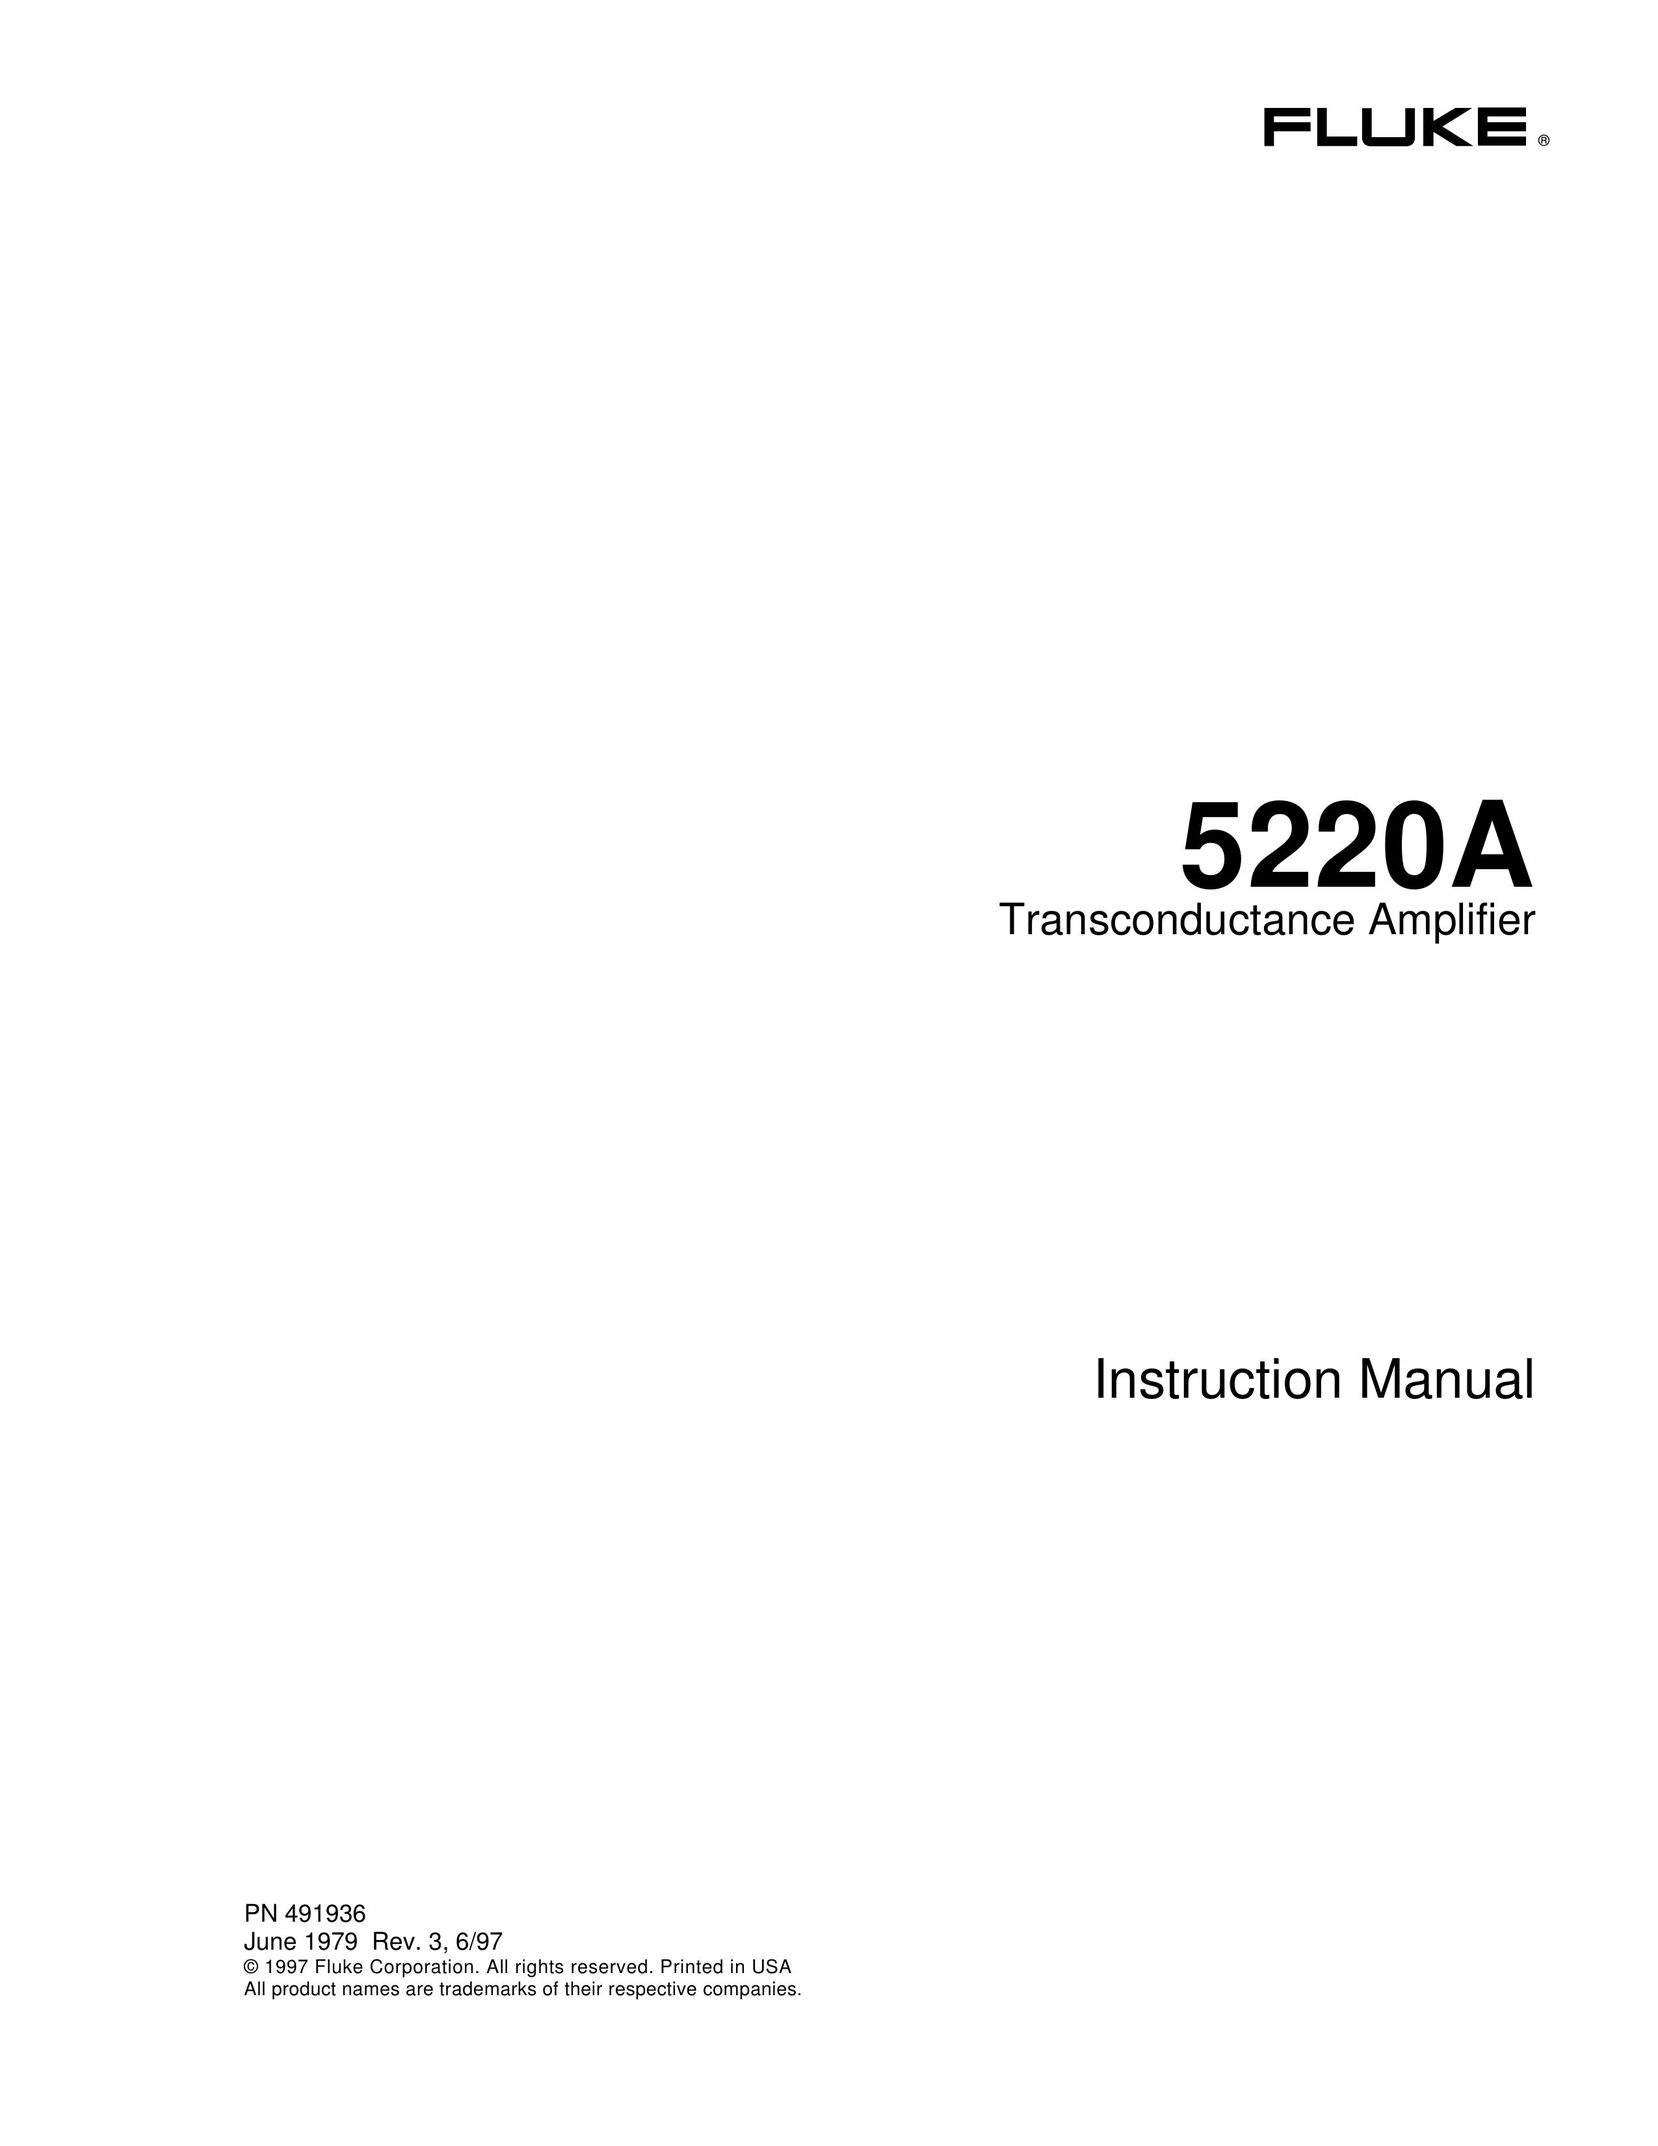 Fluke 5220A Car Amplifier User Manual